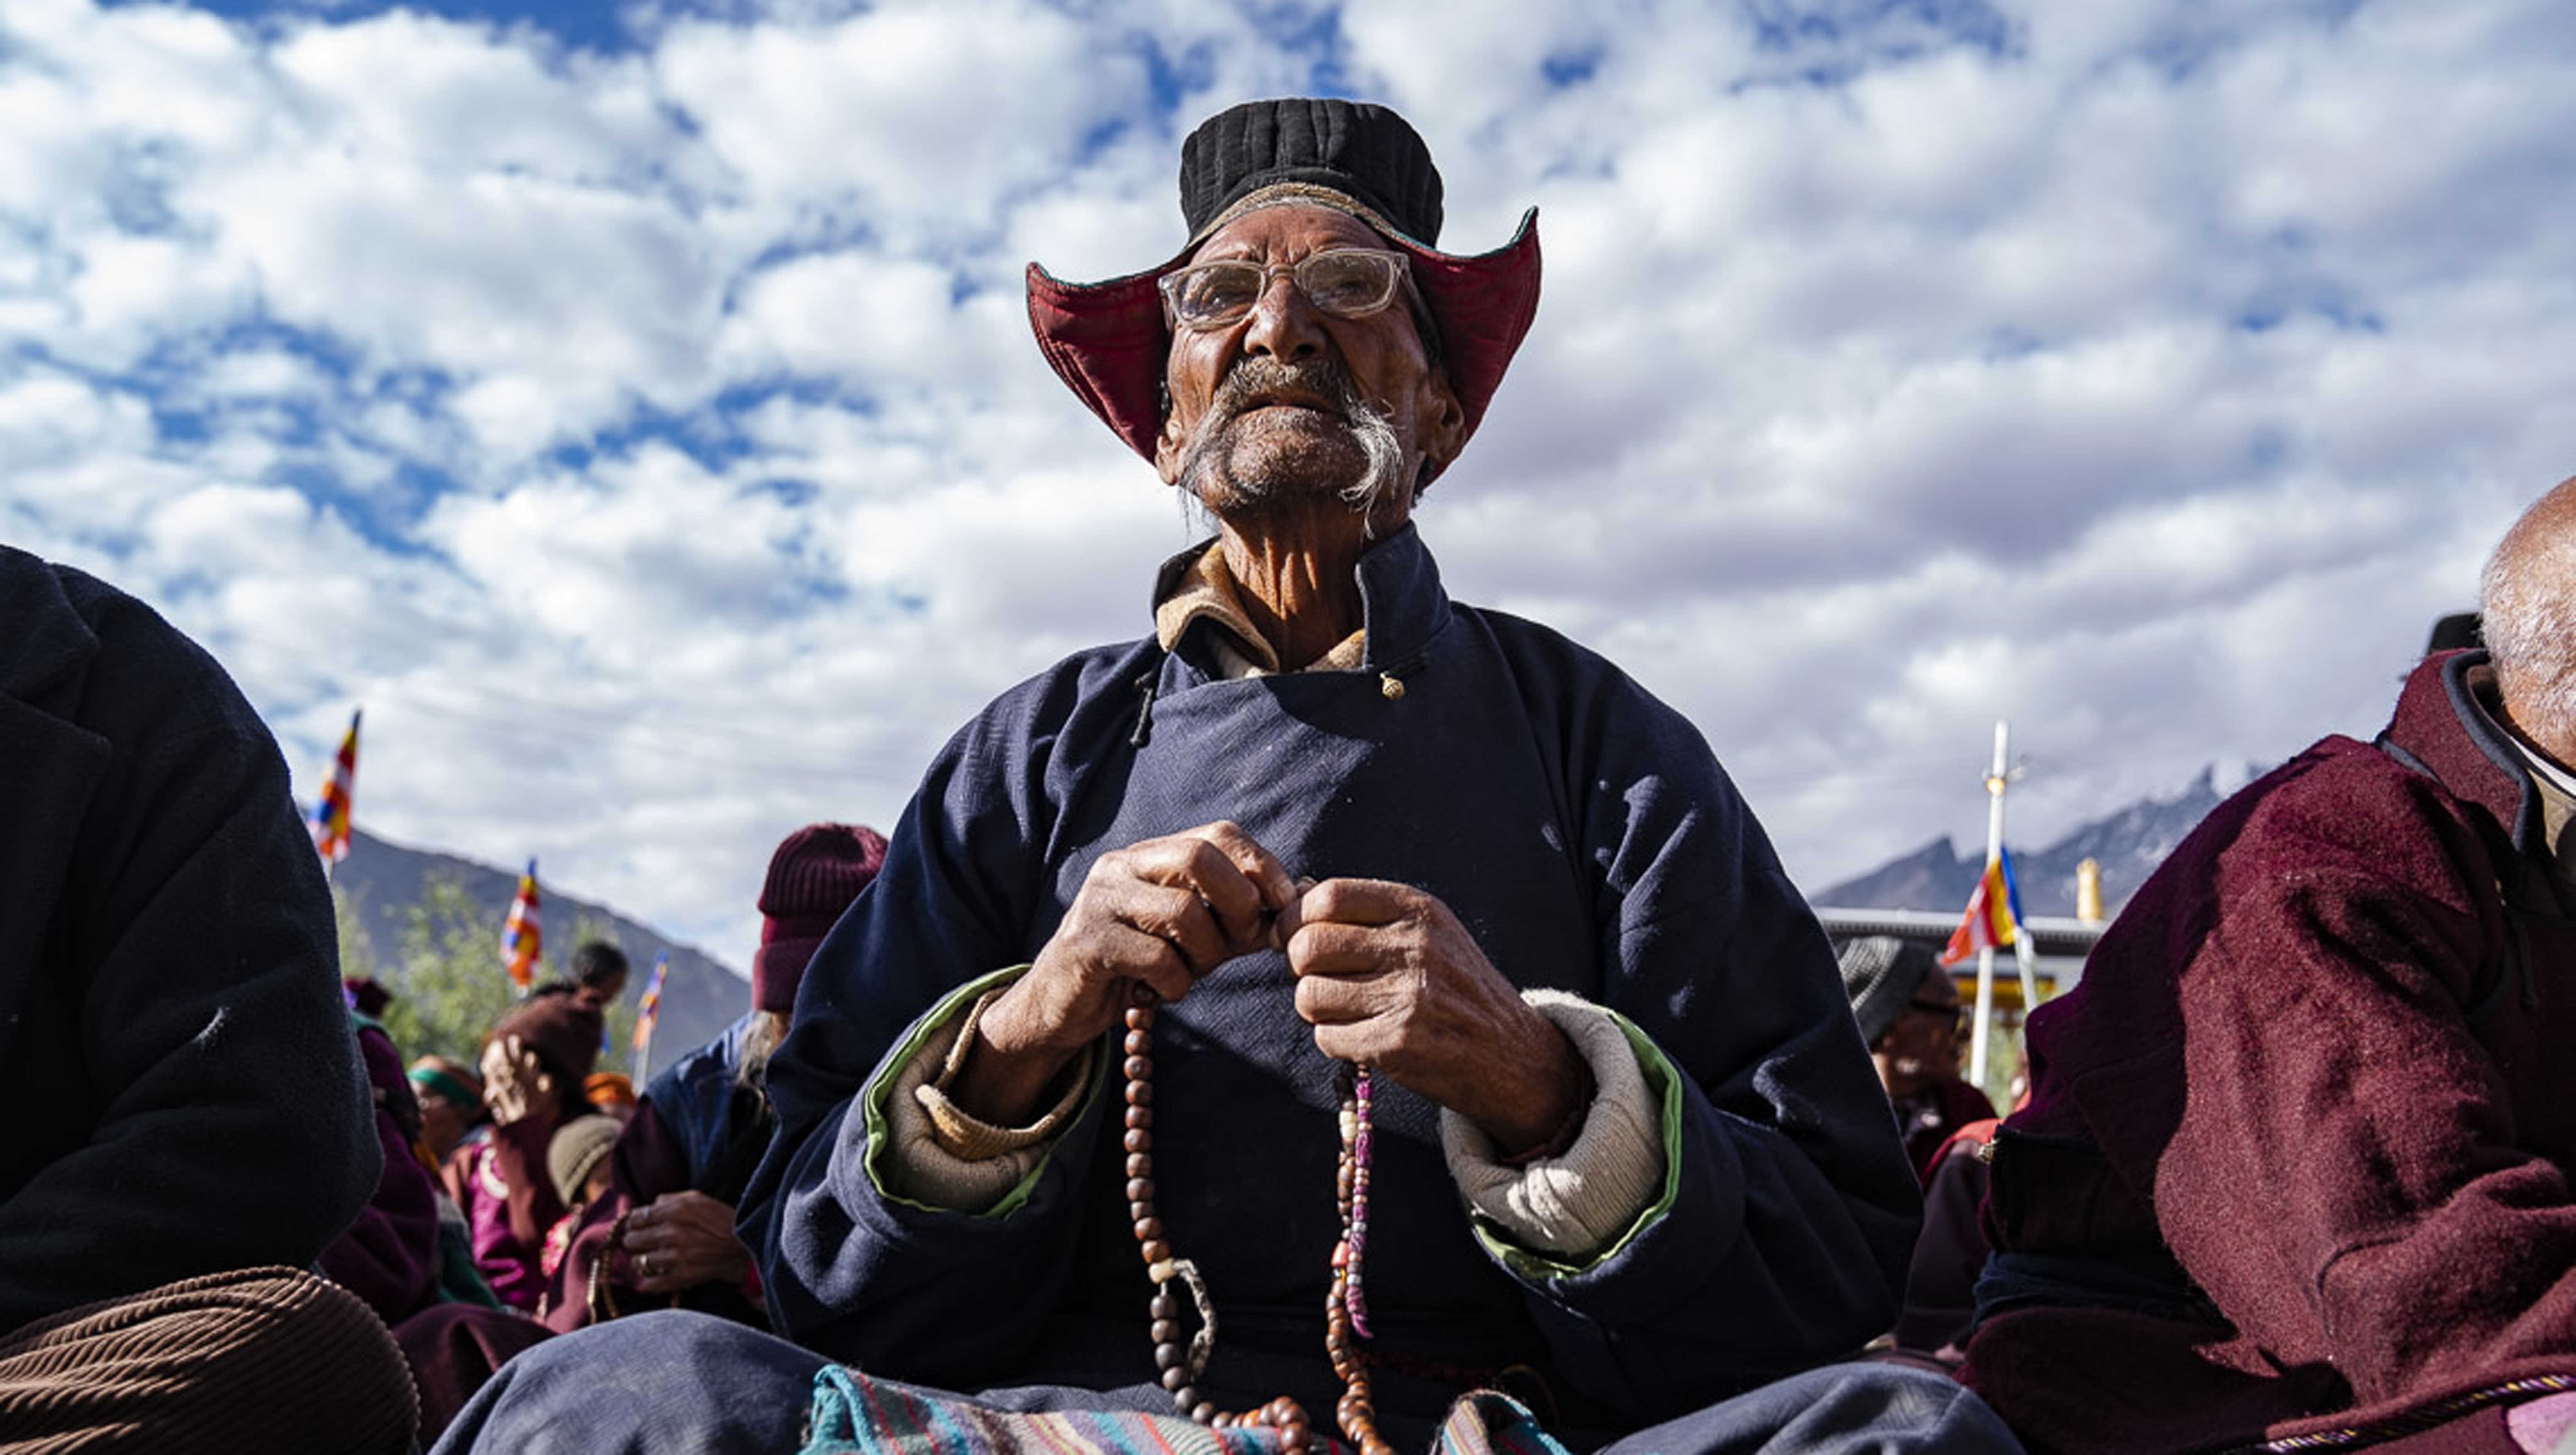 Gli insegnamenti di Sua Santità il Dalai Lama a Padum vengono seguiti da tutti con grande attenzione. Zanskar, India, il 22 luglio 2018. Foto di Tenzin Choejor